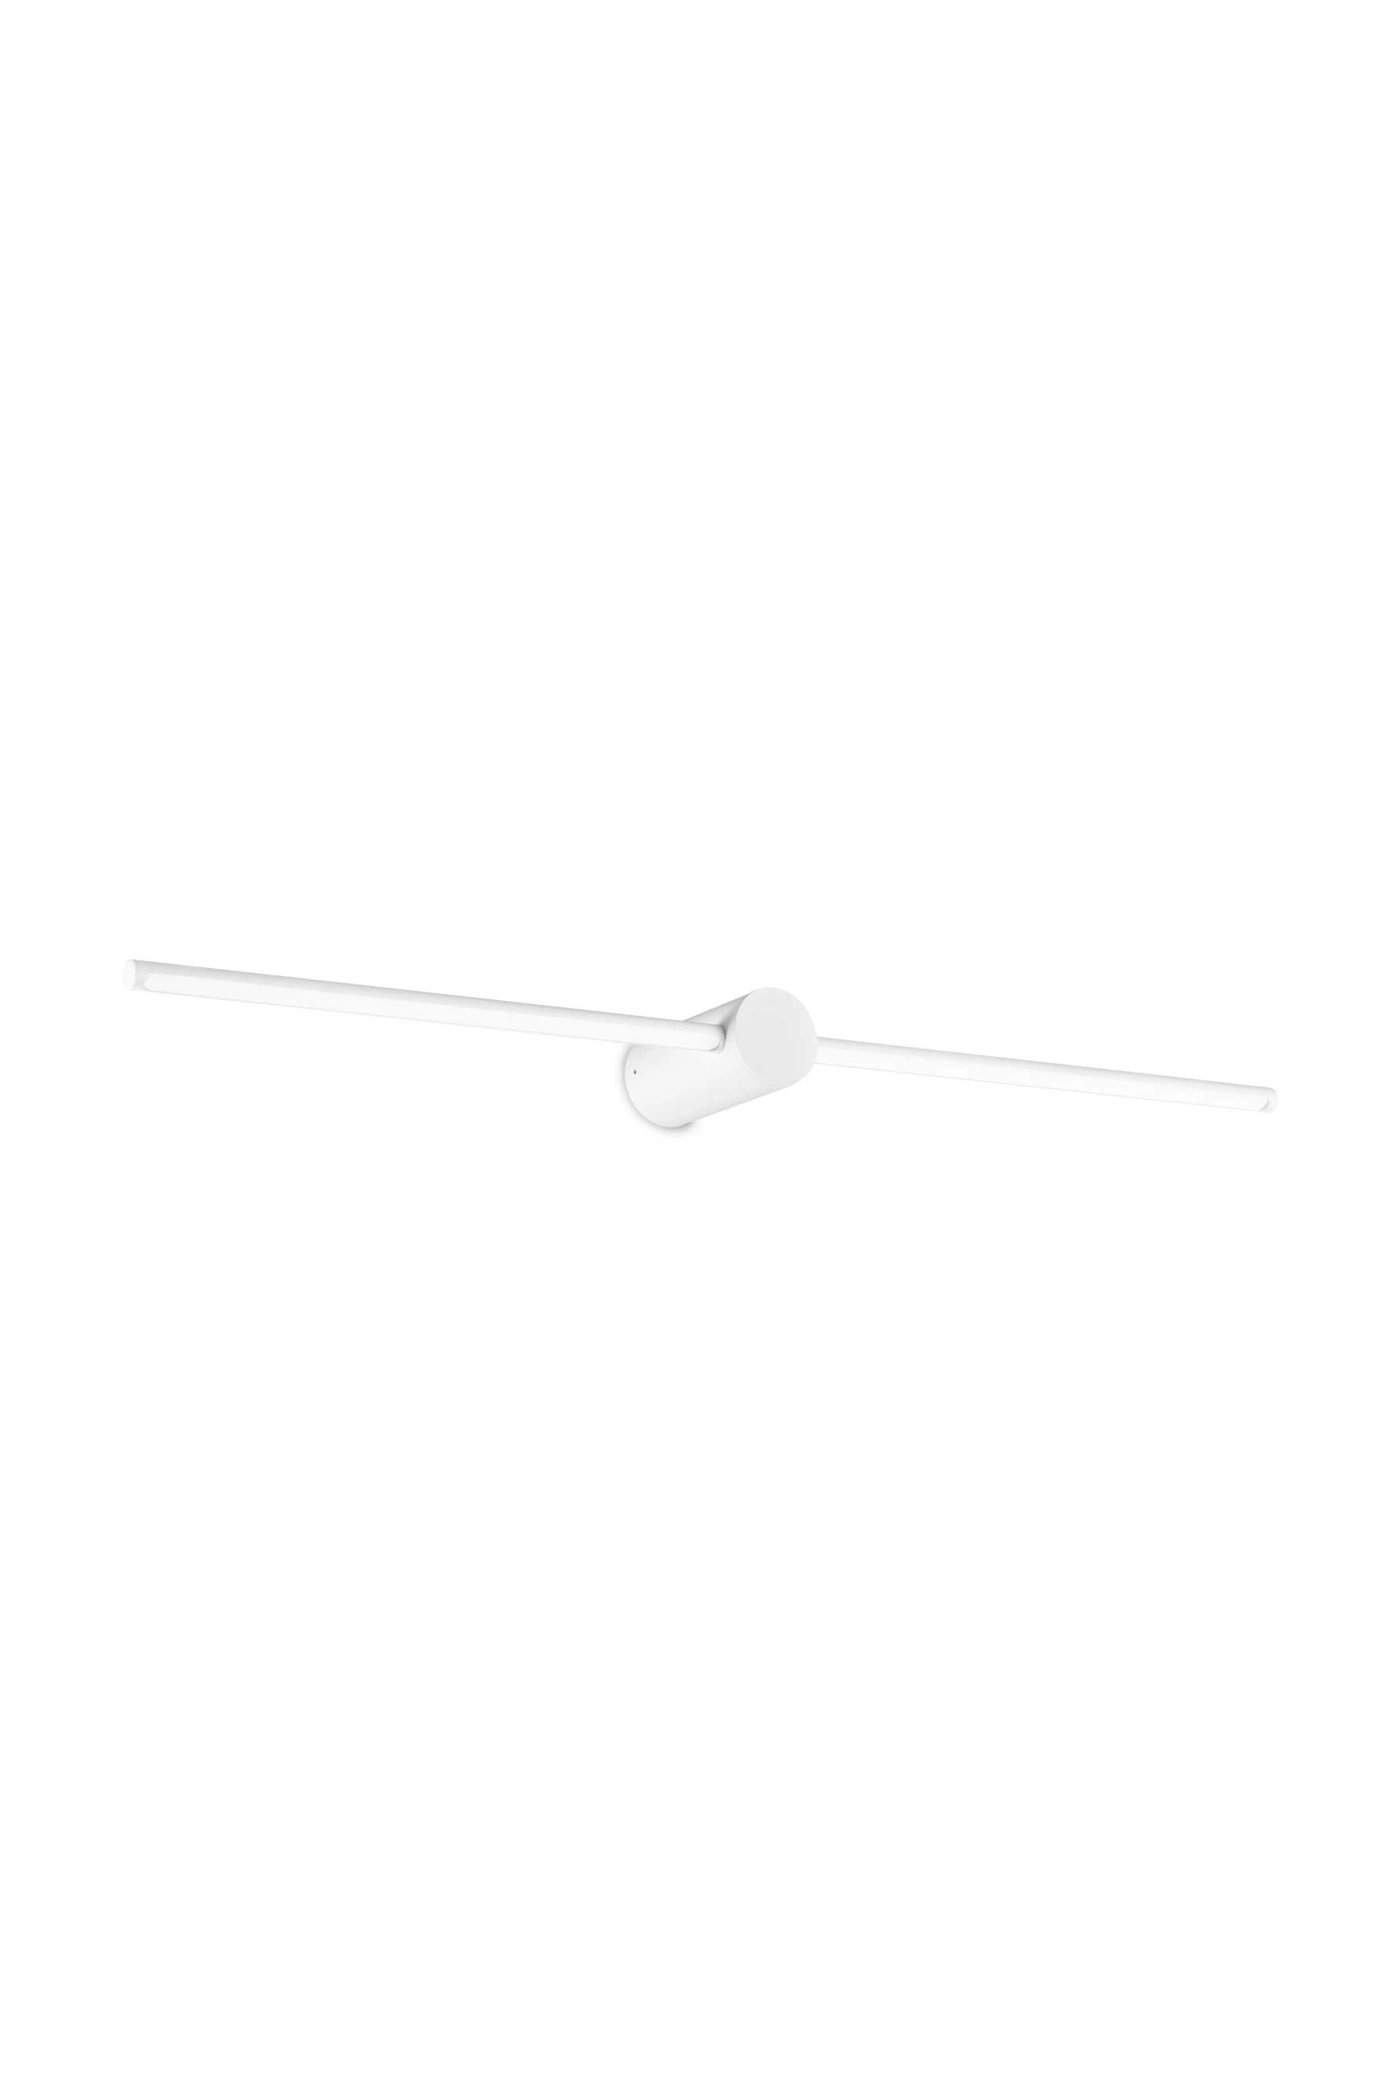   
                        
                        Підсвітка для ванної IDEAL LUX (Італія) 10674    
                         у стилі Хай-тек.  
                        Тип джерела світла: вбудований led-модуль, незмінний.                                                 Кольори плафонів і підвісок: Білий.                         Матеріал: Пластик.                          фото 1